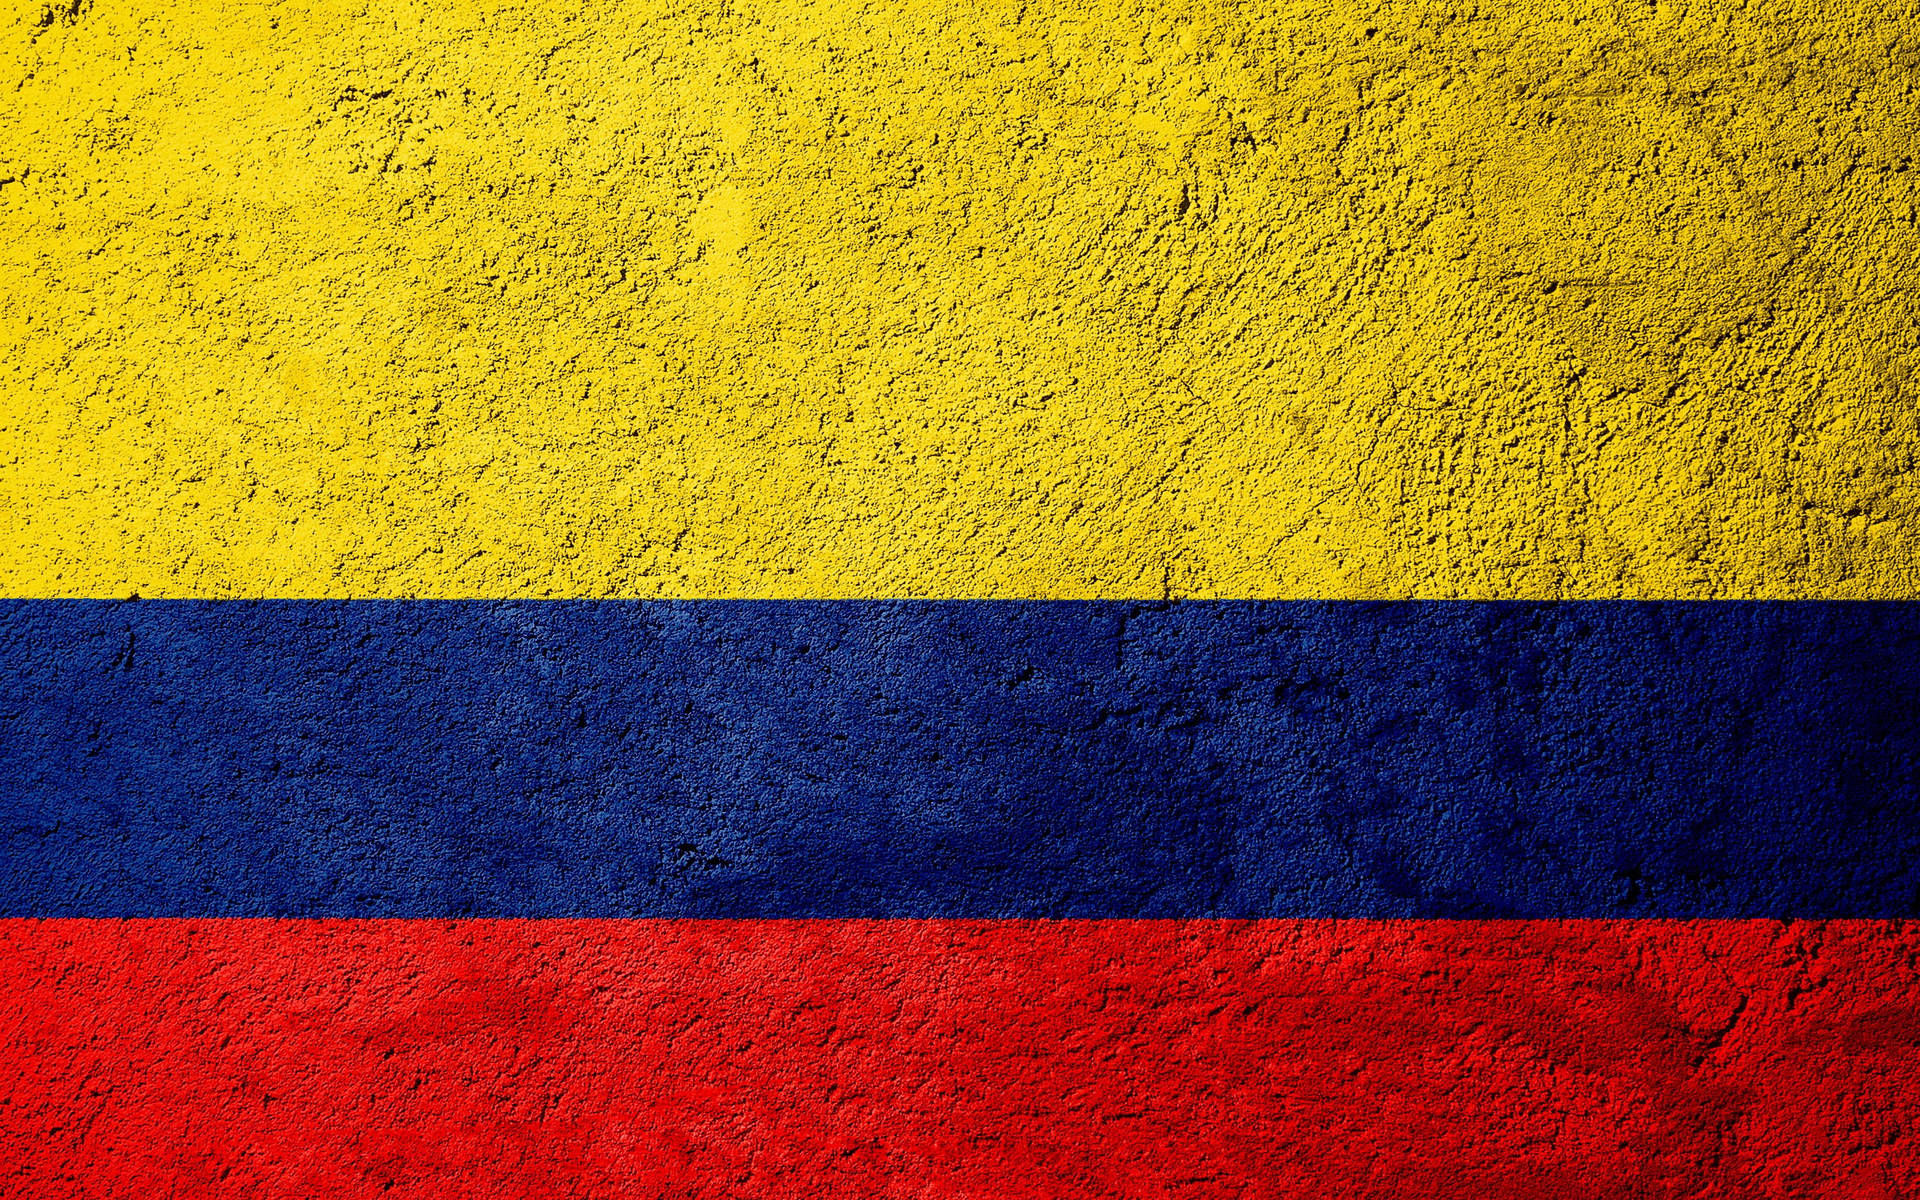 Banderade Colombia En Concreto Fondo de pantalla